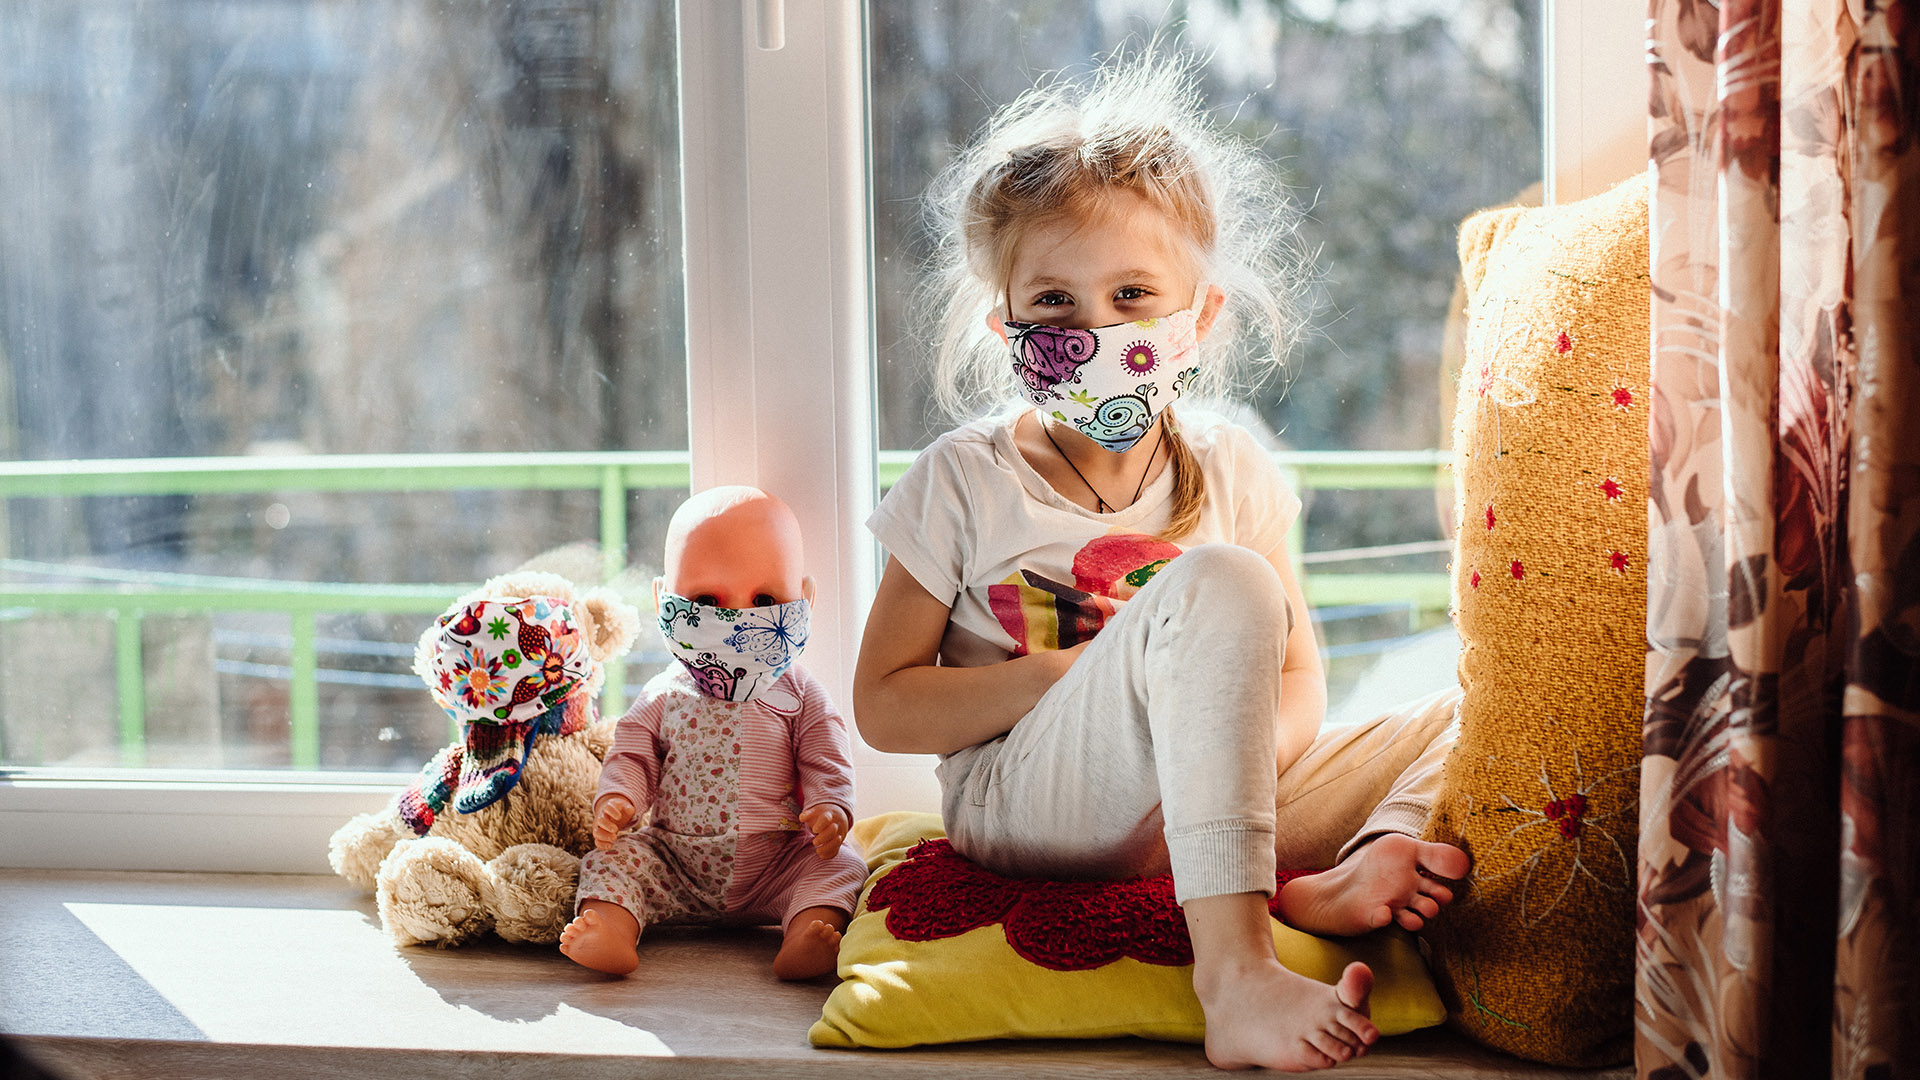 "Los niños sienten, en cierta medida, que no se les ha permitido ser niños y que han visto sus derechos mucho más limitados que los adultos" (Shutterstock)